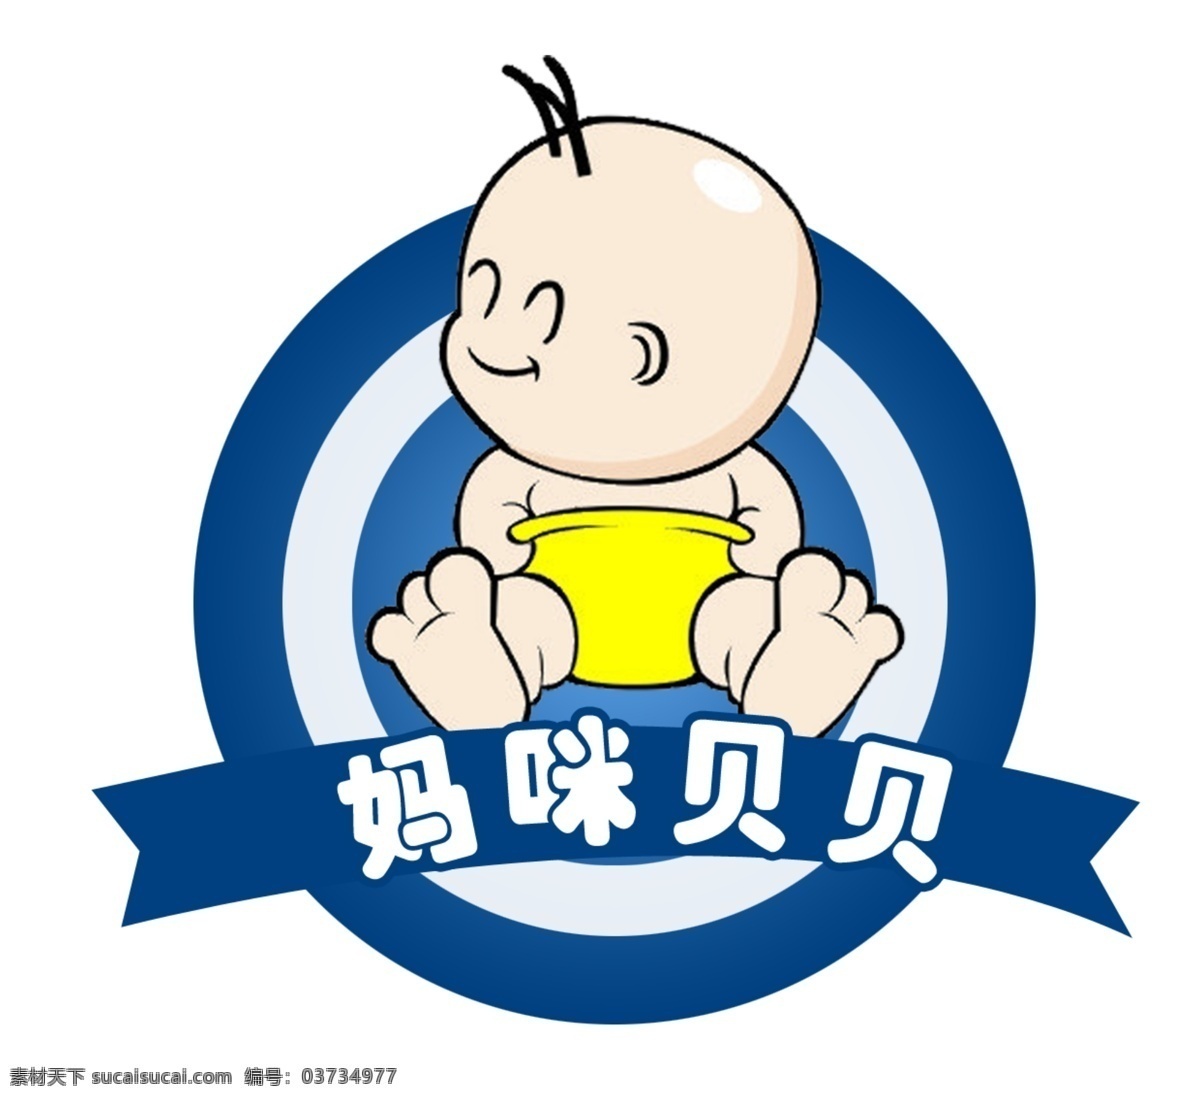 妈咪贝贝 logo 婴儿 母婴店商标 可爱标志 展板模板